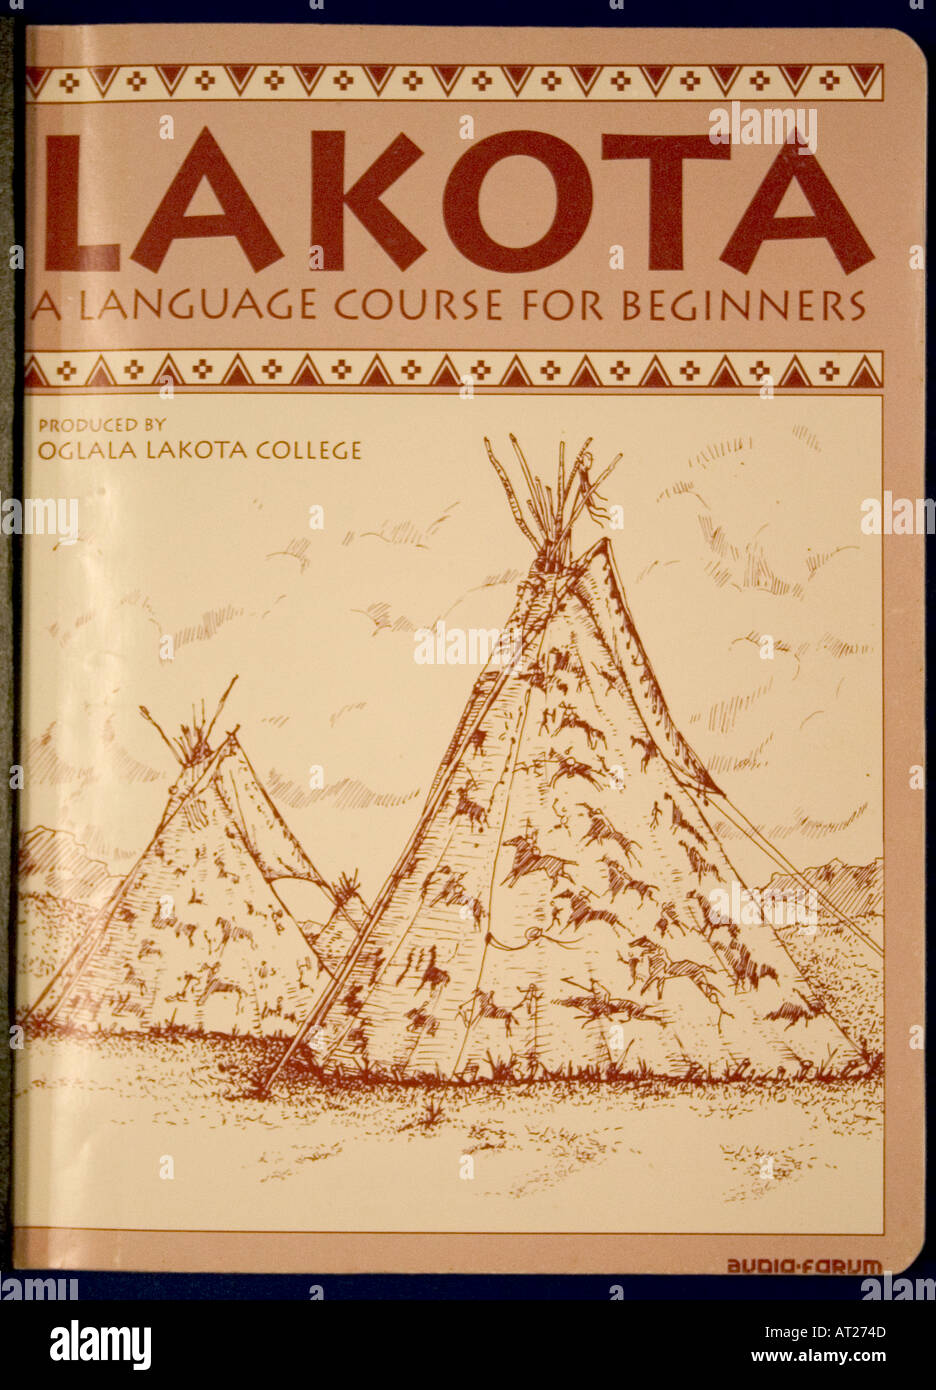 Cours de langue lakota indiens américains pour les débutants trouvent dans la bibliothèque centrale de Marquette. Minneapolis Minnesota MN USA Banque D'Images